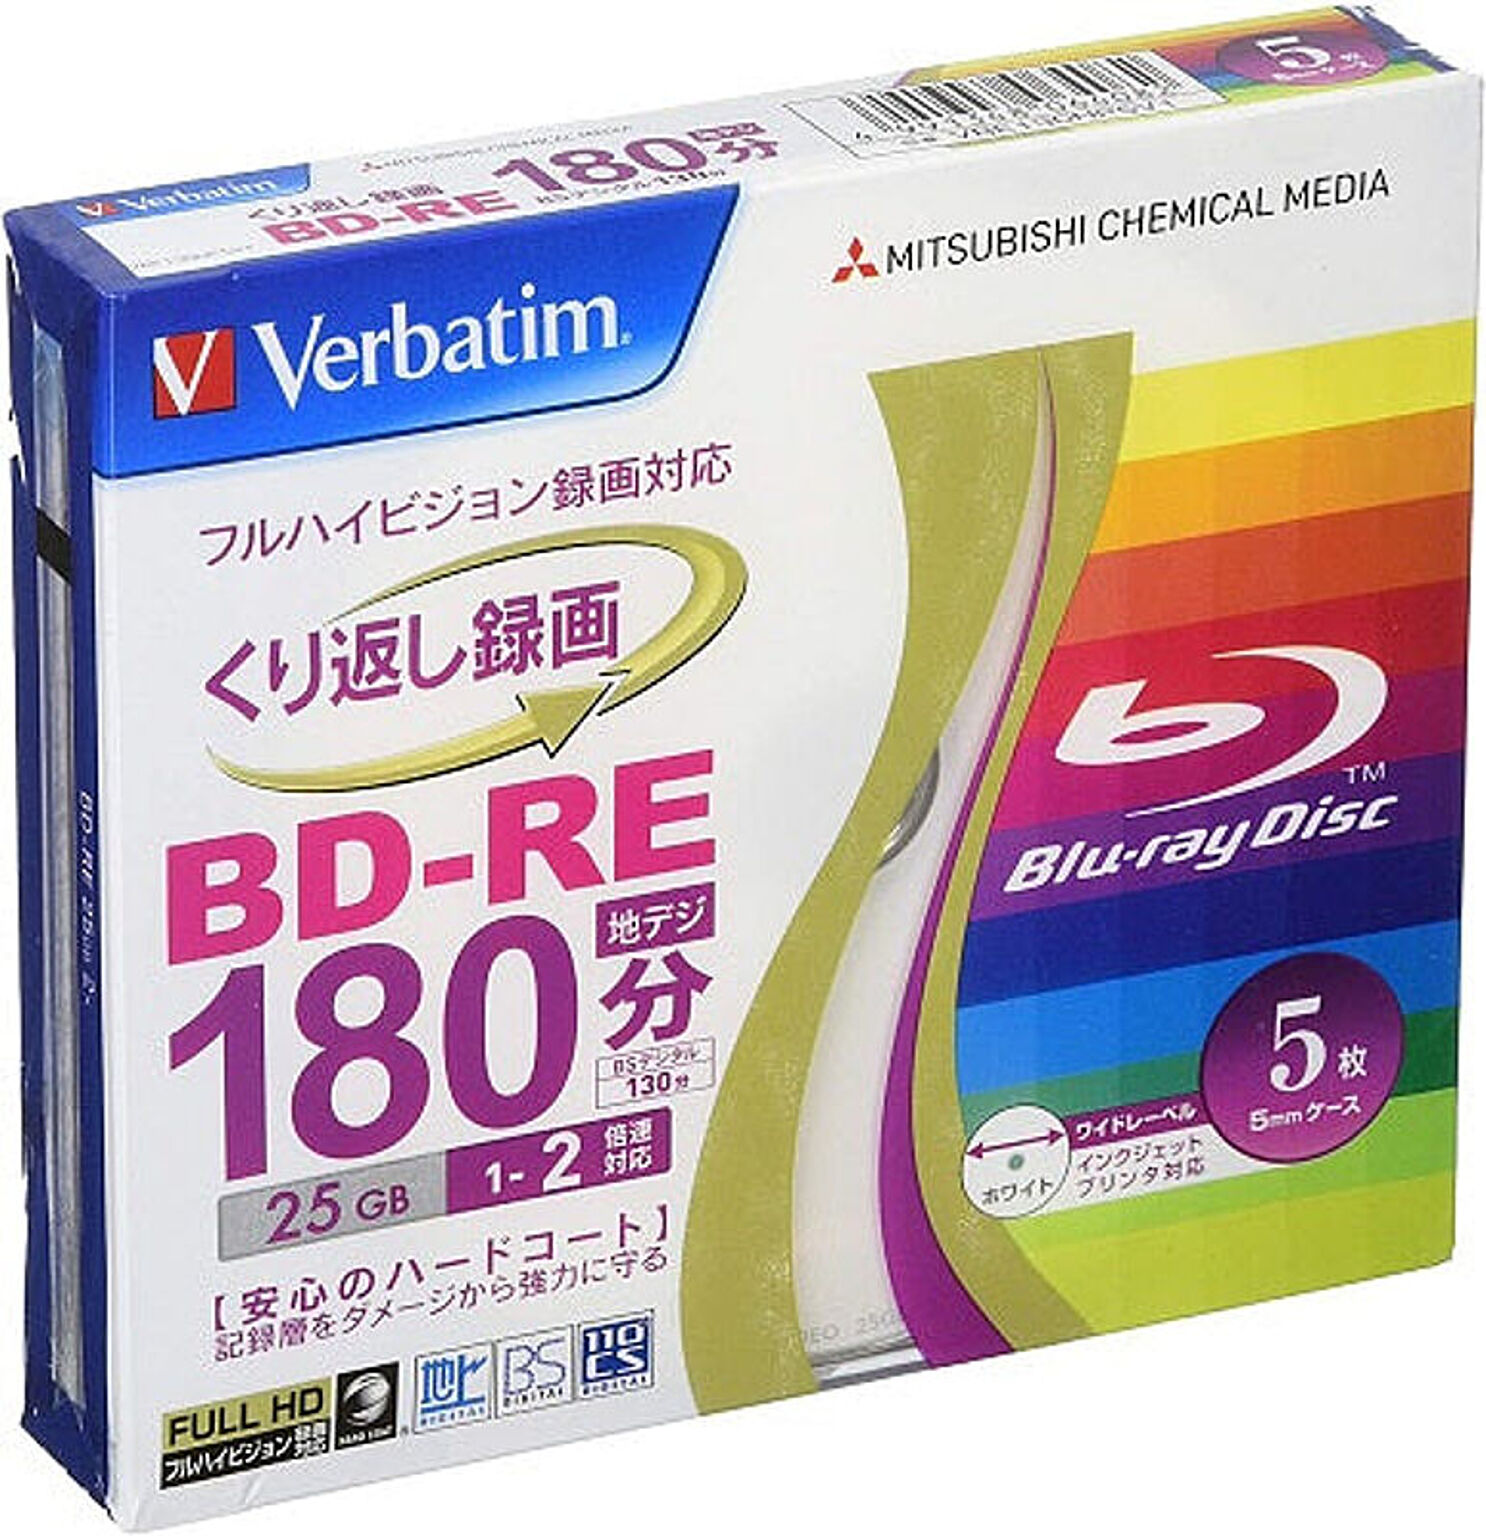 BD-R 書換え 録画用 Verbatim 1-2倍速対応 25GB 5枚 ブルーレイディスク バーベイタム VBE130NP5V1 管理No. 4991348064082